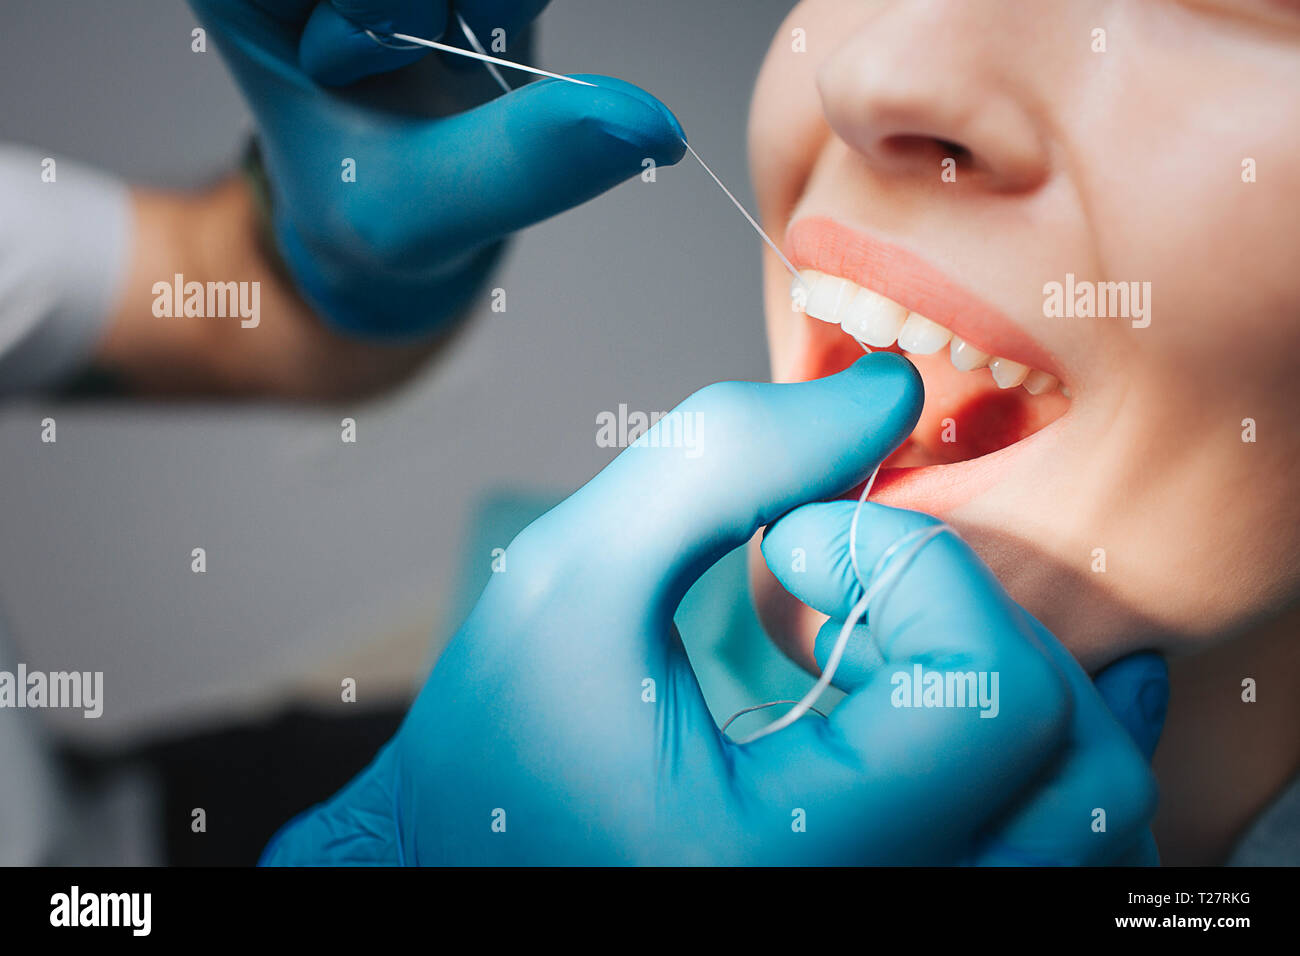 Schnitt Ansicht schließen sich junge weibliche Client in der Zahnheilkunde. Arzt mit Zahnseide für die Reinigung zwischen den Zähnen. Frau Mund öffnete. Sie zeigen schöne Stockfoto